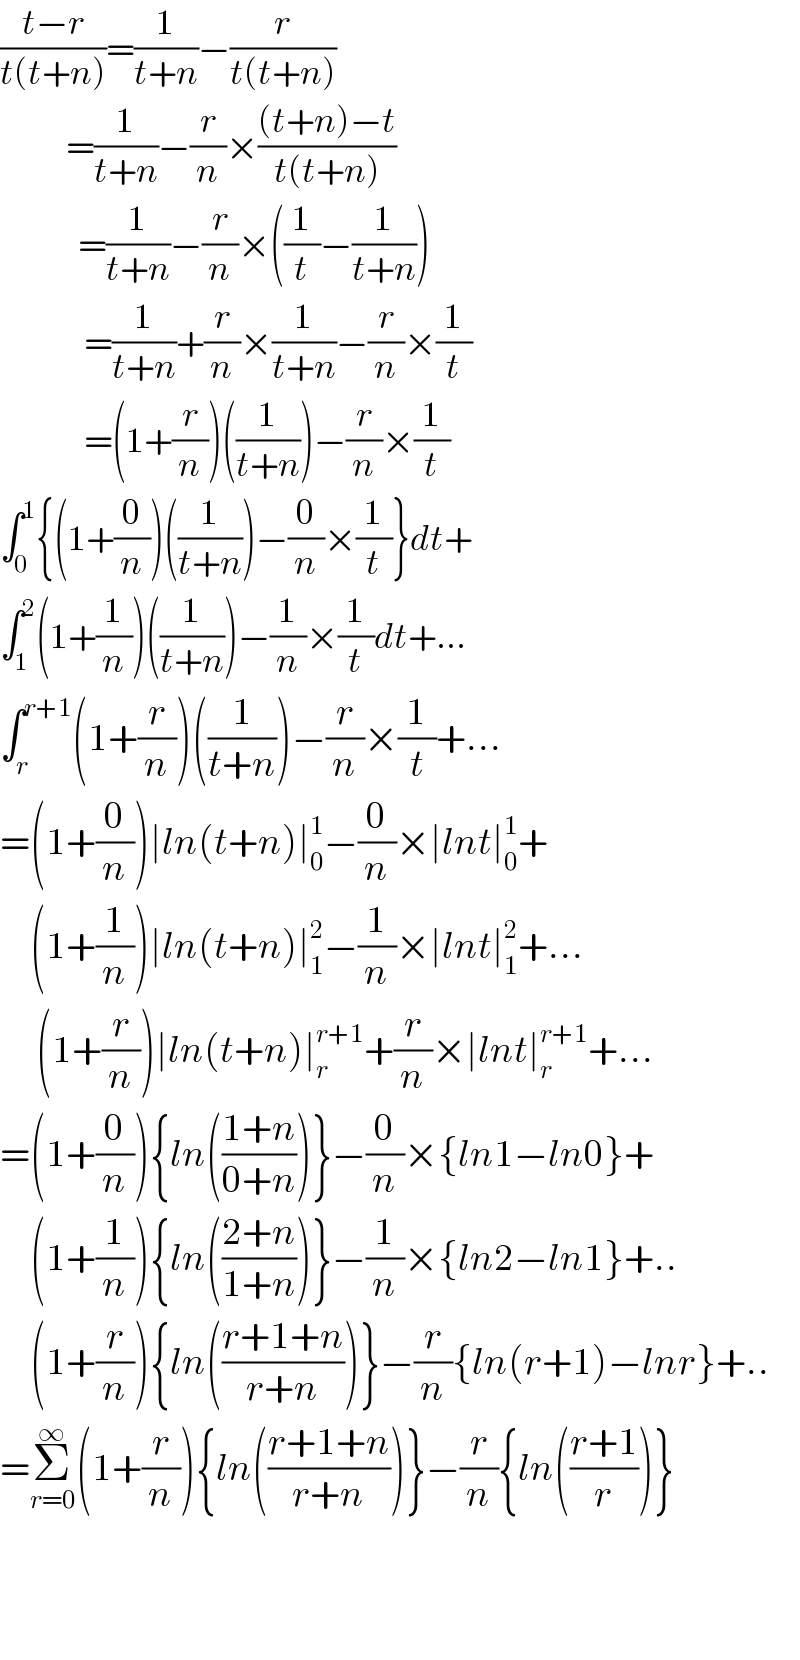 ((t−r)/(t(t+n)))=(1/(t+n))−(r/(t(t+n)))             =(1/(t+n))−(r/n)×(((t+n)−t)/(t(t+n)))               =(1/(t+n))−(r/n)×((1/t)−(1/(t+n)))                =(1/(t+n))+(r/n)×(1/(t+n))−(r/n)×(1/t)                =(1+(r/n))((1/(t+n)))−(r/n)×(1/t)  ∫_0 ^1 {(1+(0/n))((1/(t+n)))−(0/n)×(1/t)}dt+  ∫_1 ^2 (1+(1/n))((1/(t+n)))−(1/n)×(1/t)dt+...  ∫_r ^(r+1) (1+(r/n))((1/(t+n)))−(r/n)×(1/t)+...  =(1+(0/n))∣ln(t+n)∣_0 ^1 −(0/n)×∣lnt∣_0 ^1 +       (1+(1/n))∣ln(t+n)∣_1 ^2 −(1/n)×∣lnt∣_1 ^2 +...        (1+(r/n))∣ln(t+n)∣_r ^(r+1) +(r/n)×∣lnt∣_r ^(r+1) +...  =(1+(0/n)){ln(((1+n)/(0+n)))}−(0/n)×{ln1−ln0}+       (1+(1/n)){ln(((2+n)/(1+n)))}−(1/n)×{ln2−ln1}+..       (1+(r/n)){ln(((r+1+n)/(r+n)))}−(r/n){ln(r+1)−lnr}+..  =Σ_(r=0) ^∞ (1+(r/n)){ln(((r+1+n)/(r+n)))}−(r/n){ln(((r+1)/r))}      